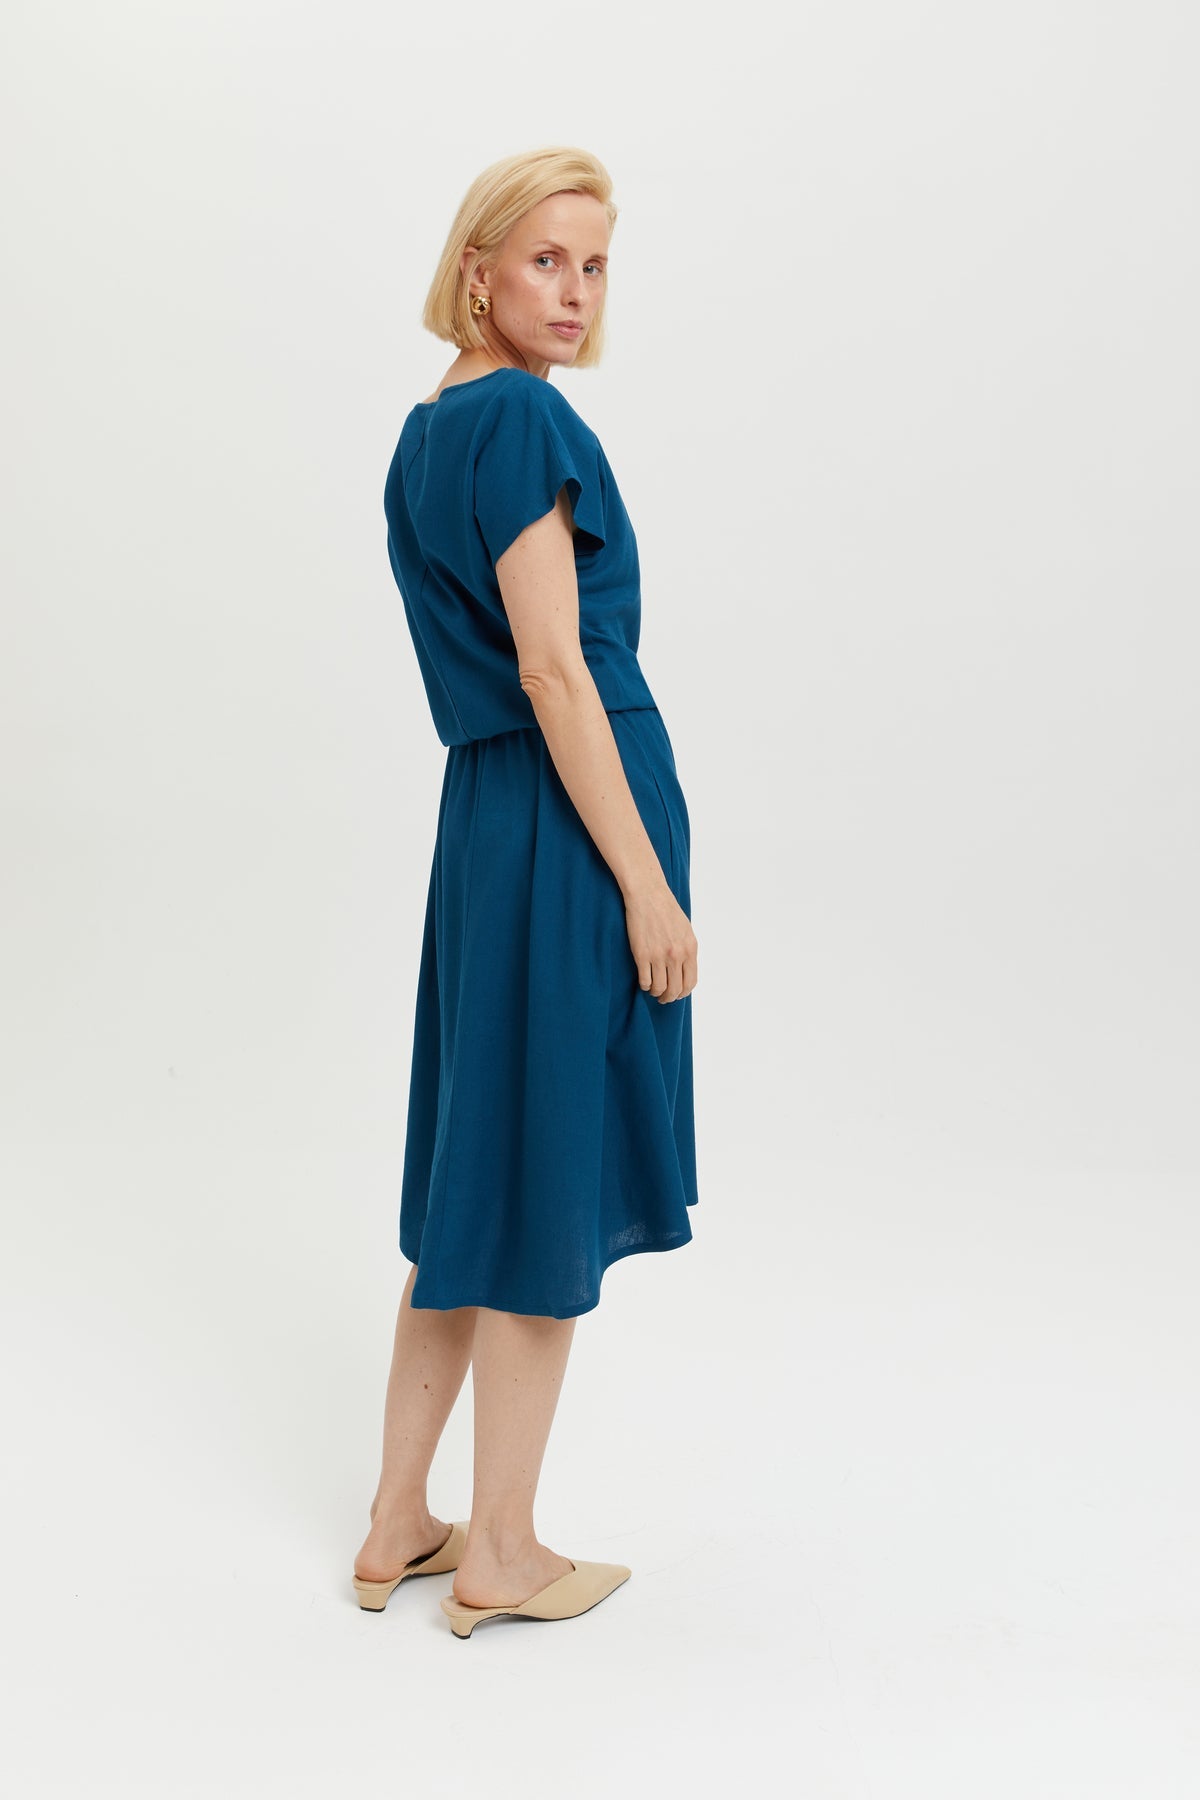 Nane | Leinenkleid mit kurzen Ärmeln in Petrol-Blau von Ayani